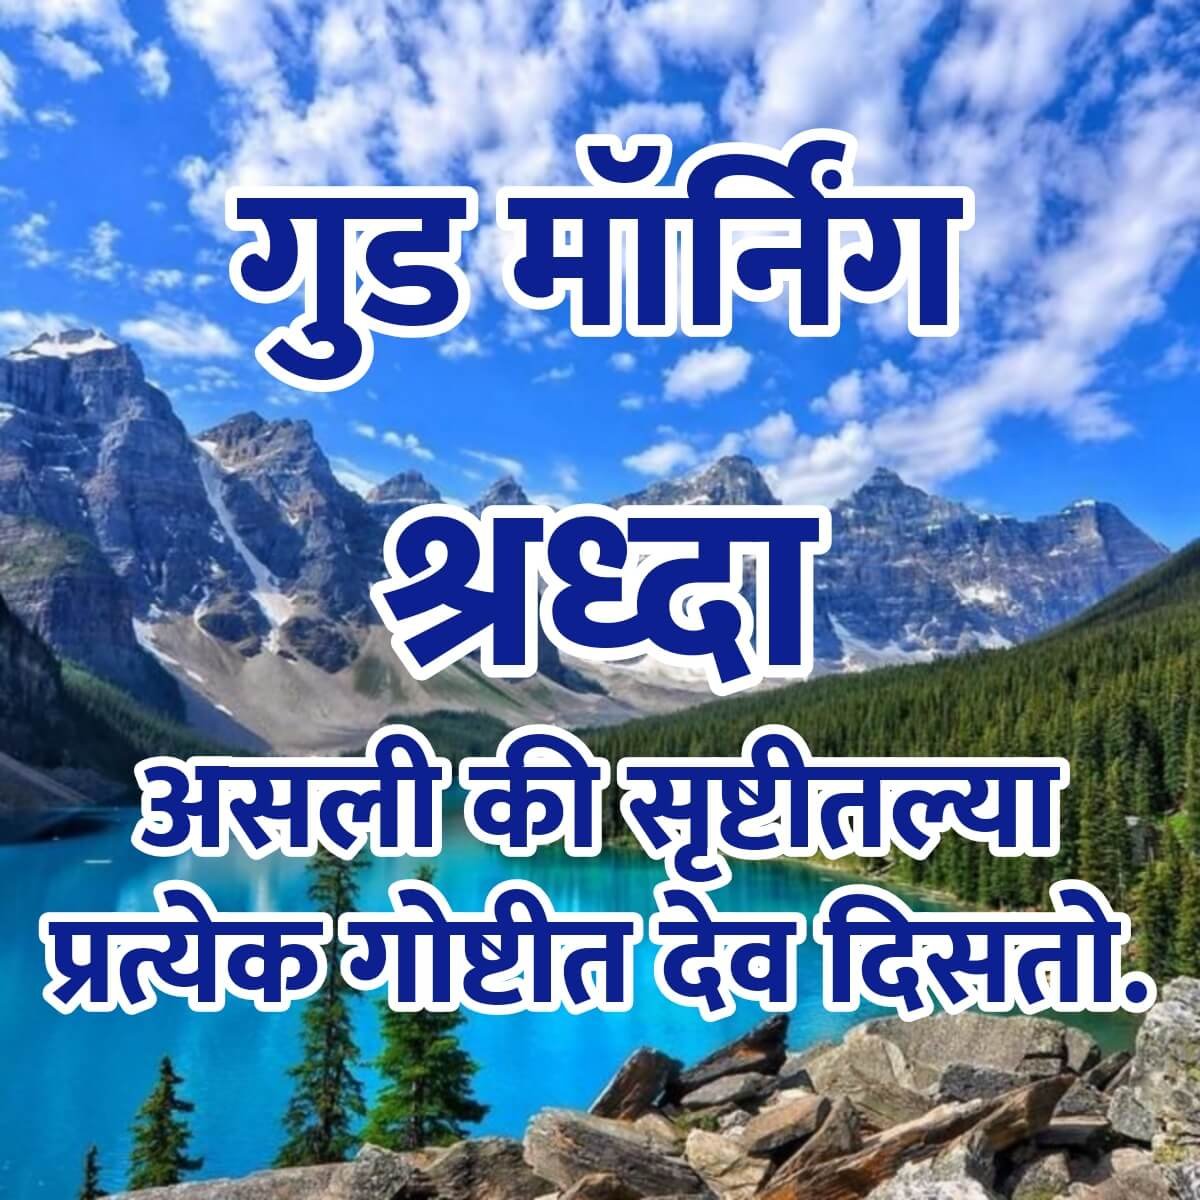 Good Morning Marathi Quotes - Good Morning Wishes & Images In Marathi